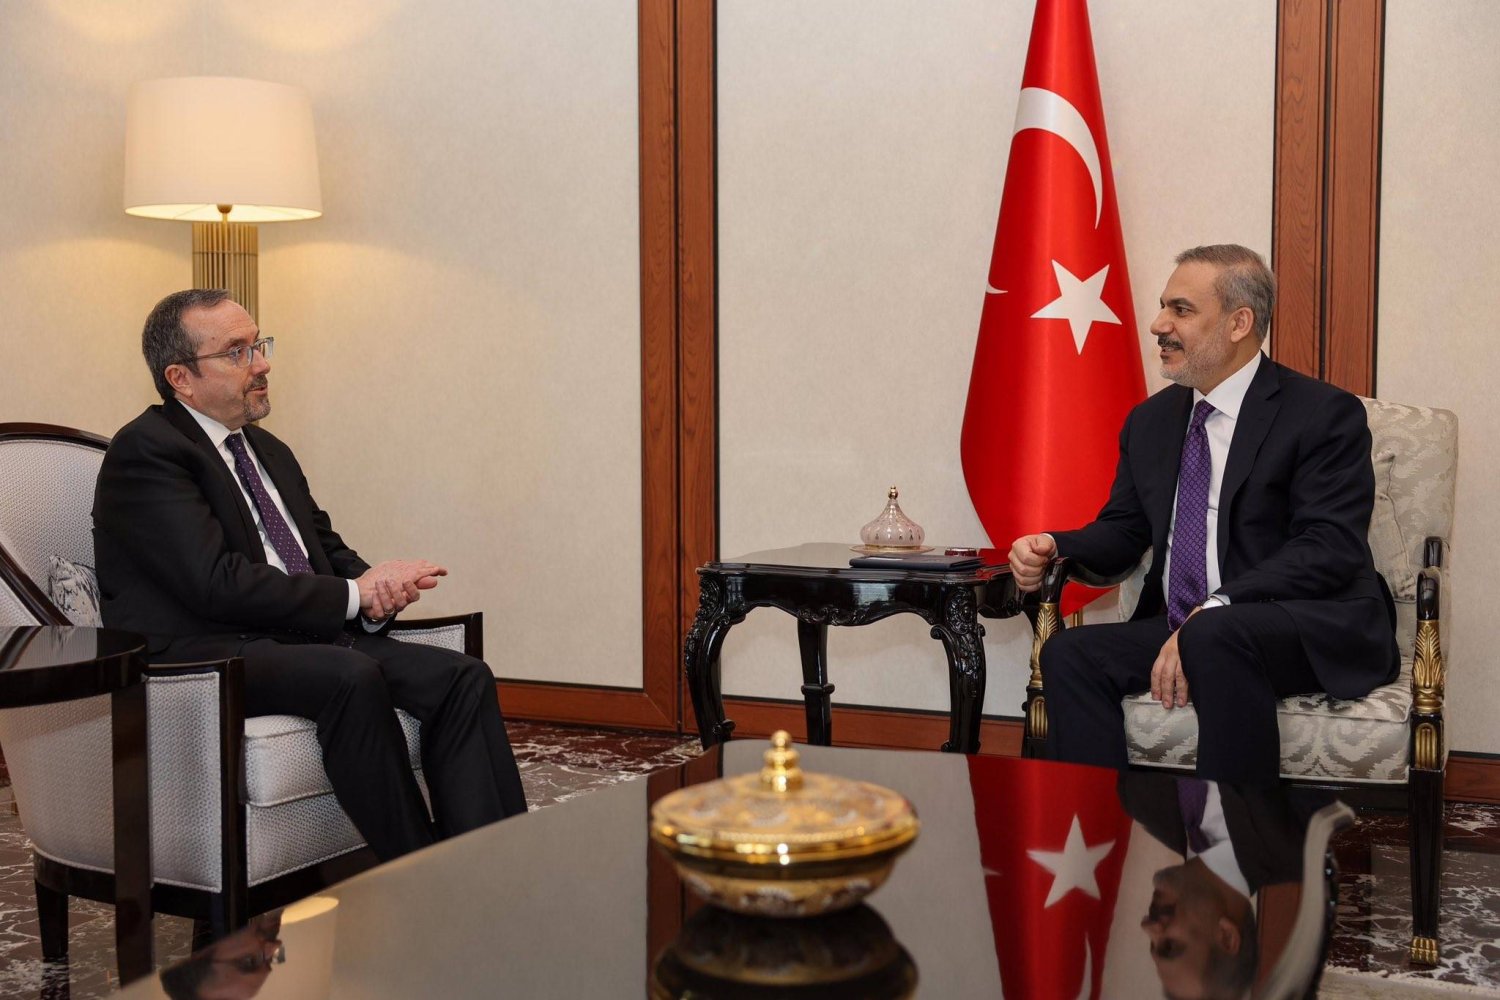 وزير الخارجية التركي هاكان فيدان بحث مع نائب وزير الخارجية الأميركي جون باس في أنقرة الأسبوع الماضي التعاون في مكافحة الإرهاب (الخارجية التركية)